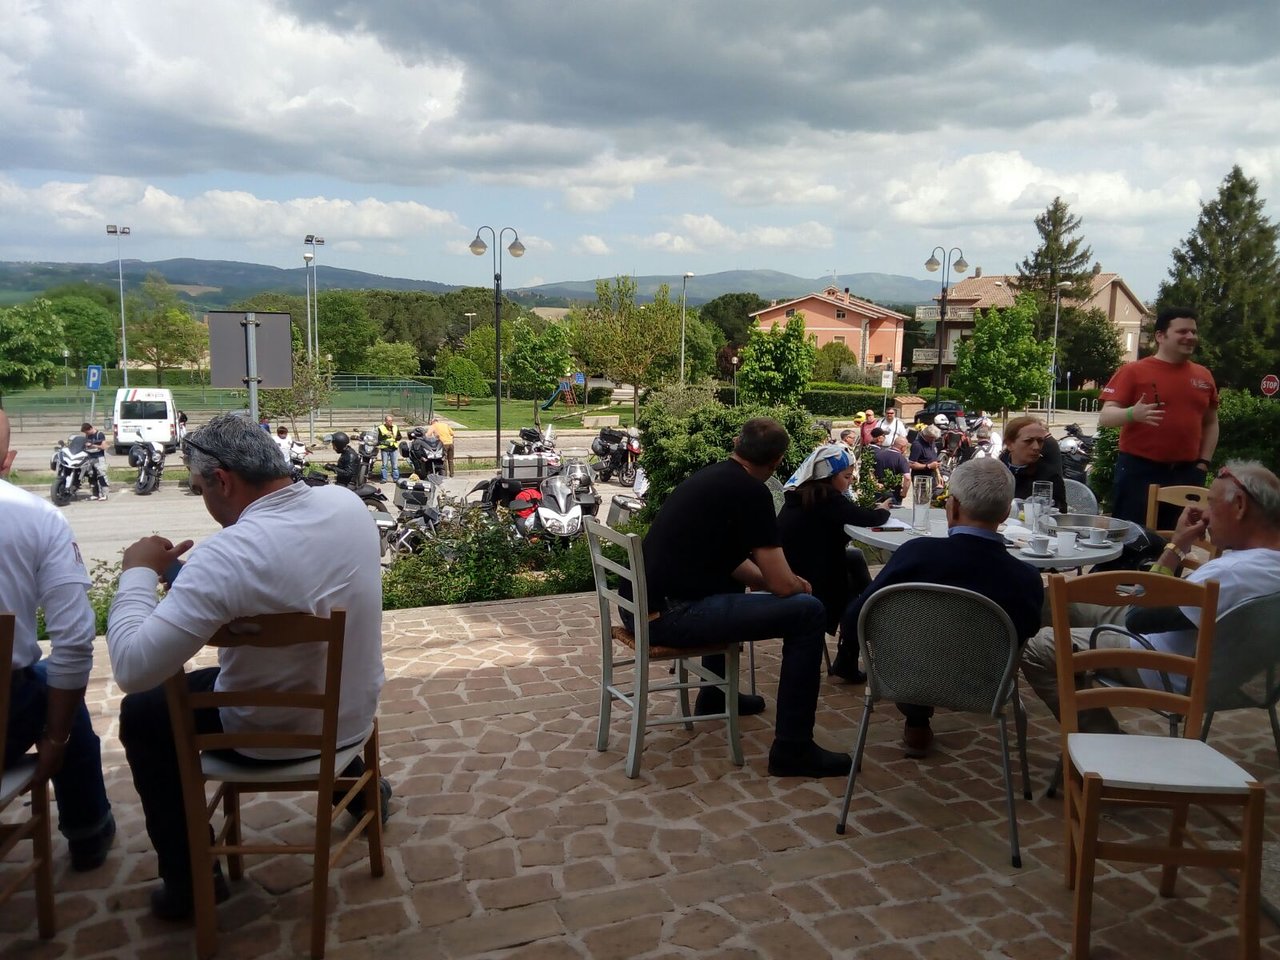 Diamond Cafe, Monte Castello di Vibio